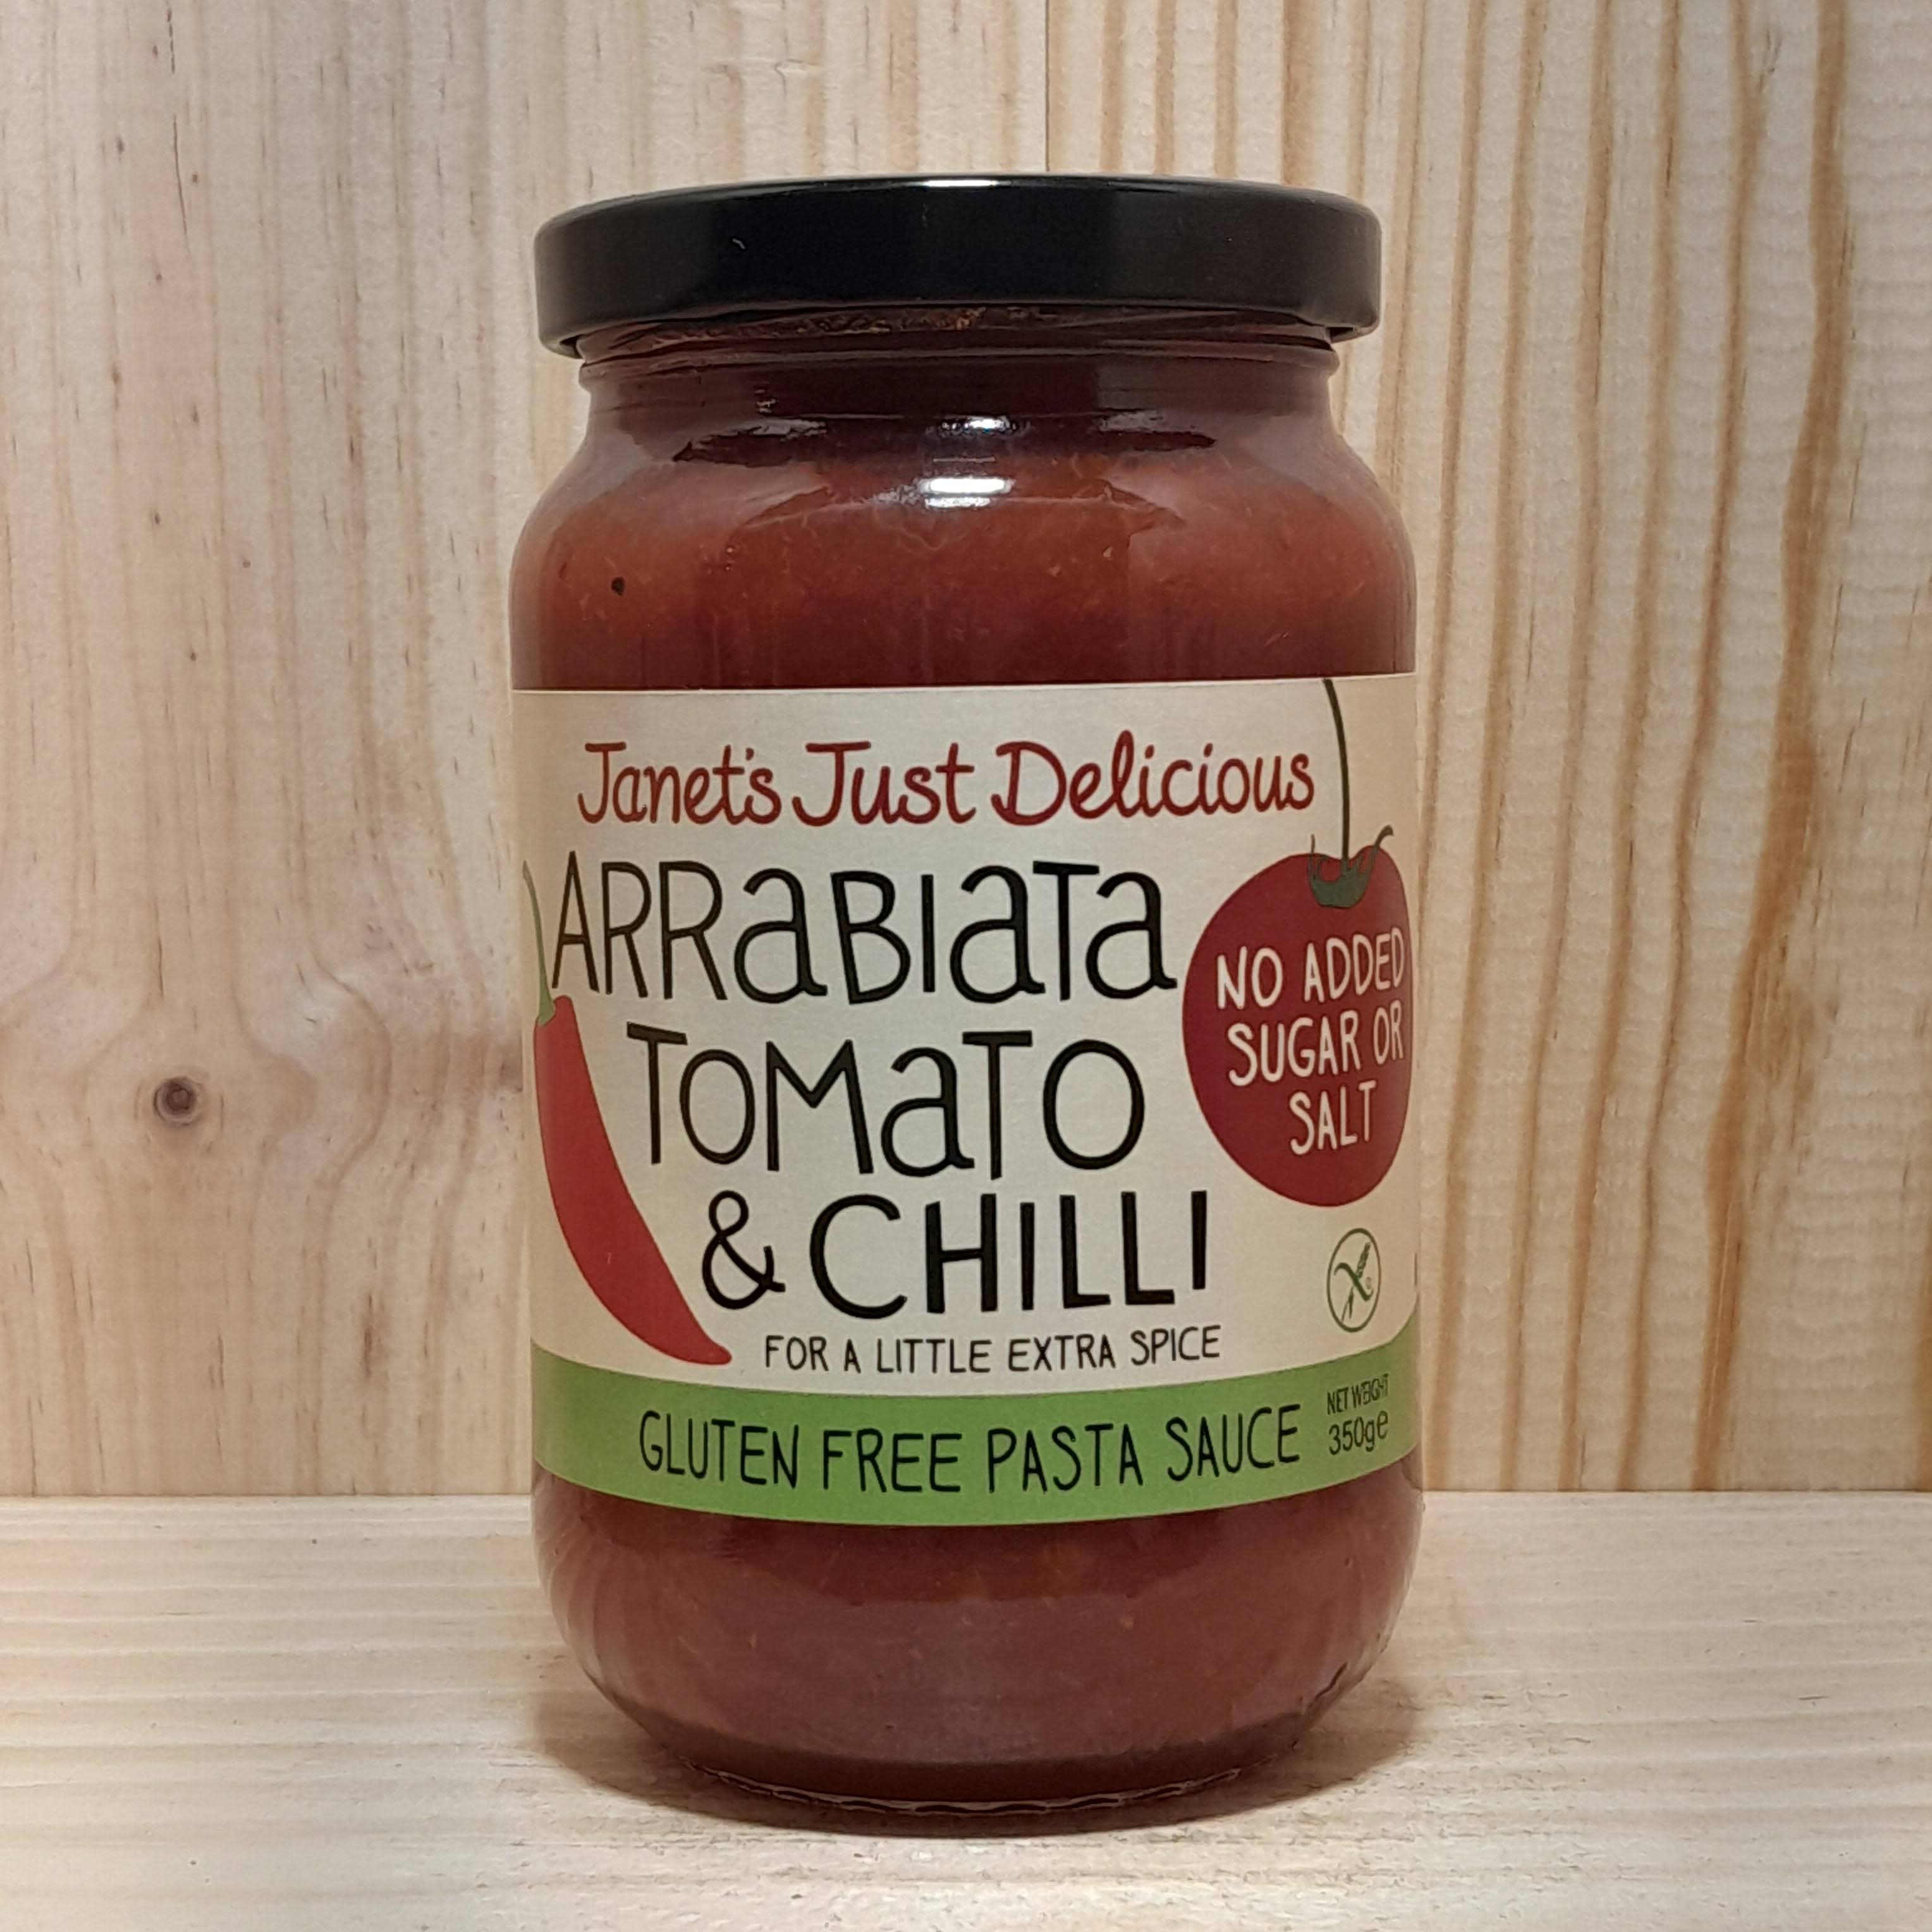 Janet's Just Delicious Gluten Free Pasta Sauce - Arrabiata Tomato and Chilli, 350g